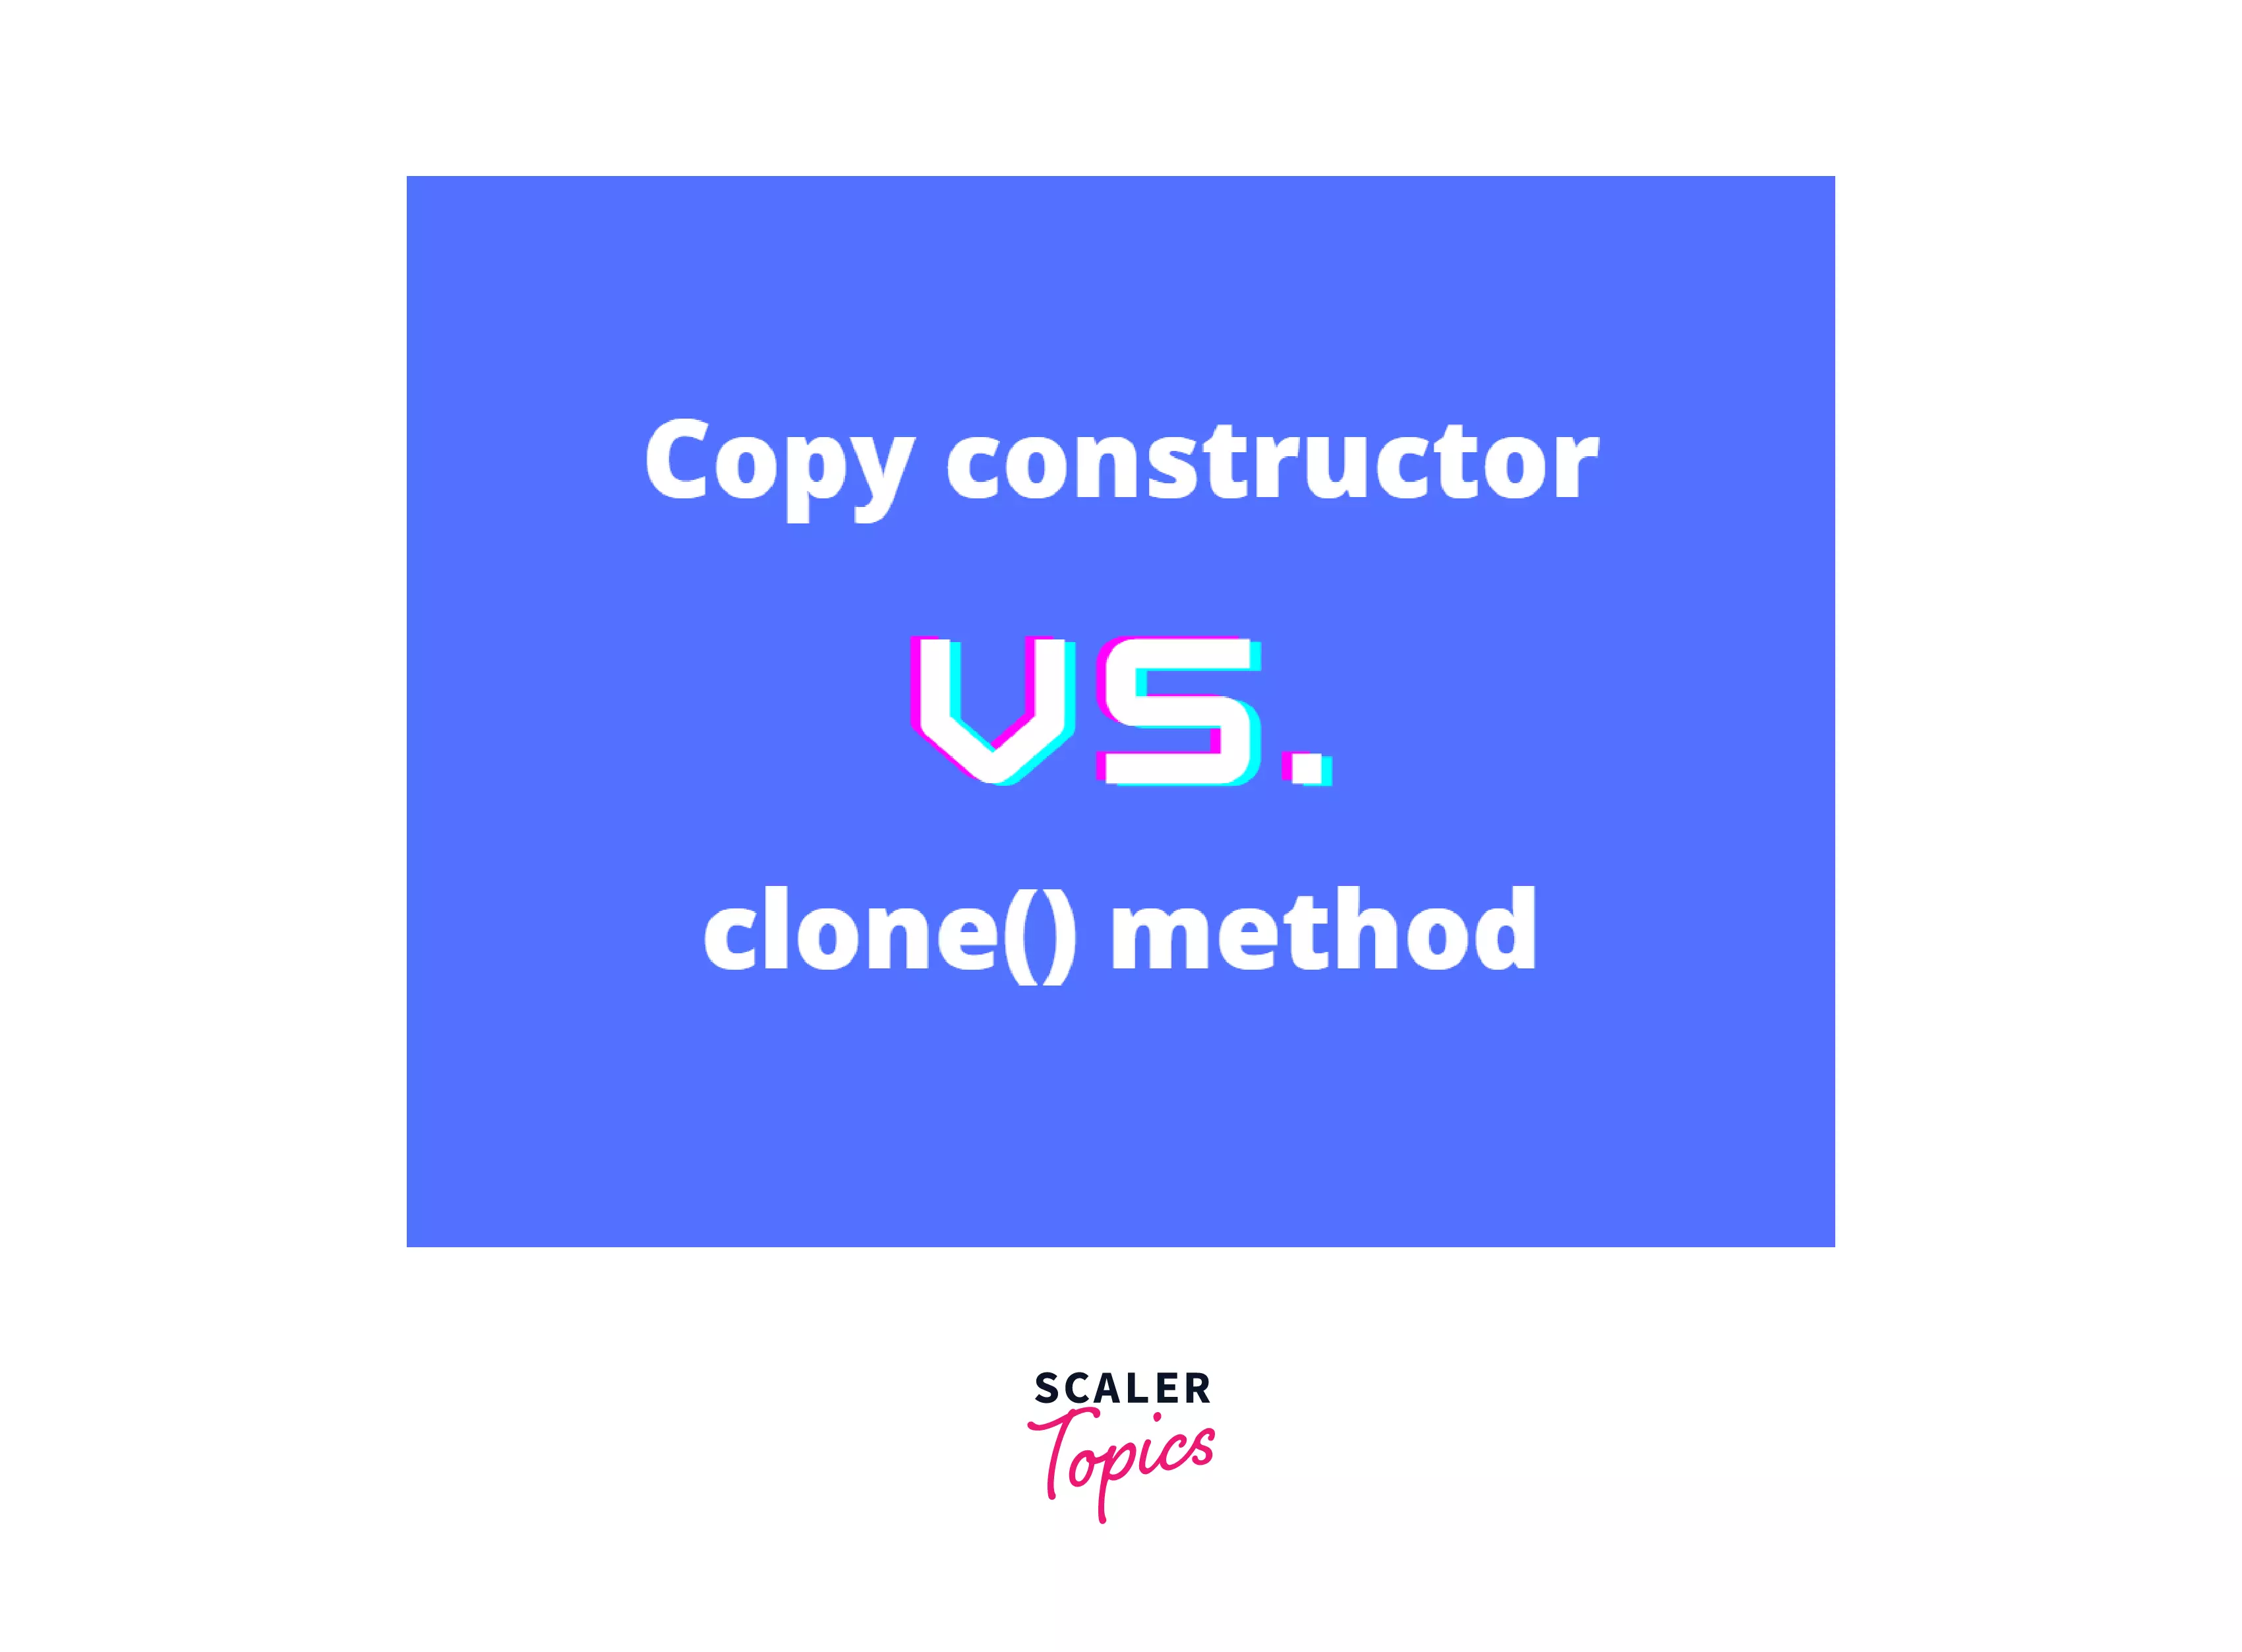 Copy Constructor vs clone method